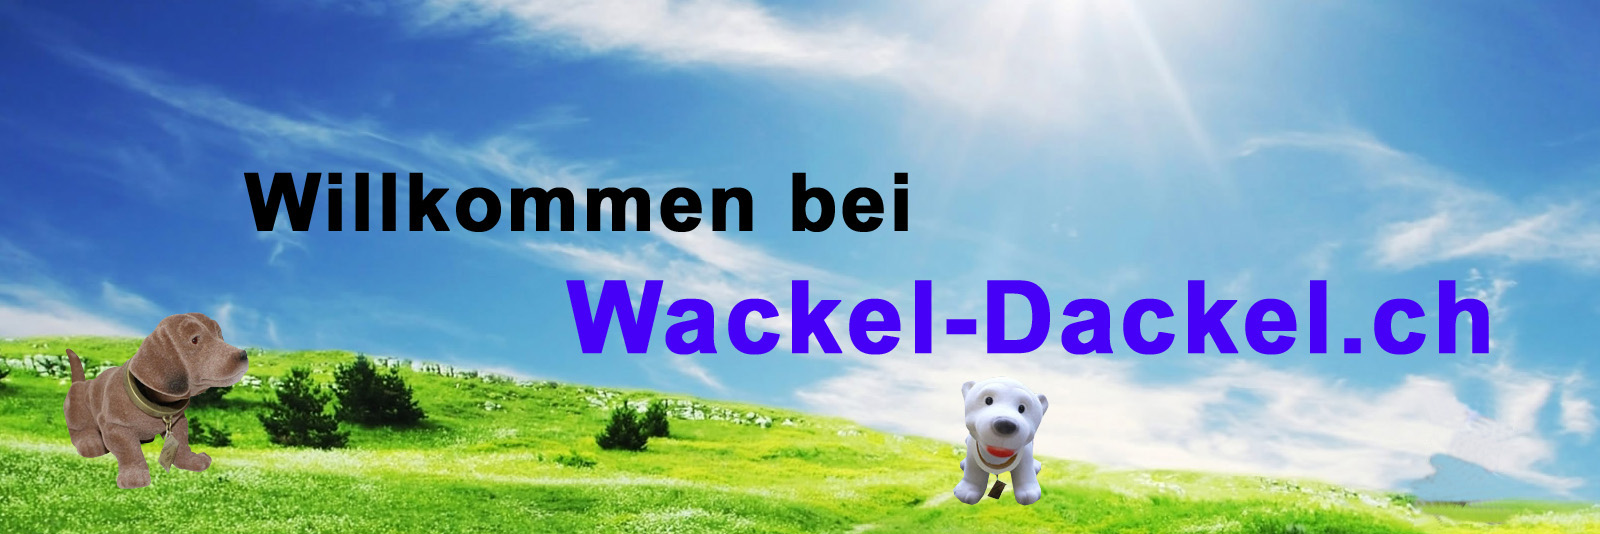 Original Wackeldackel, Wackel-Tiere, Figuren, Wackel-Dackel, Wackel-Boxer,  Wackel-Eisbärenbaby